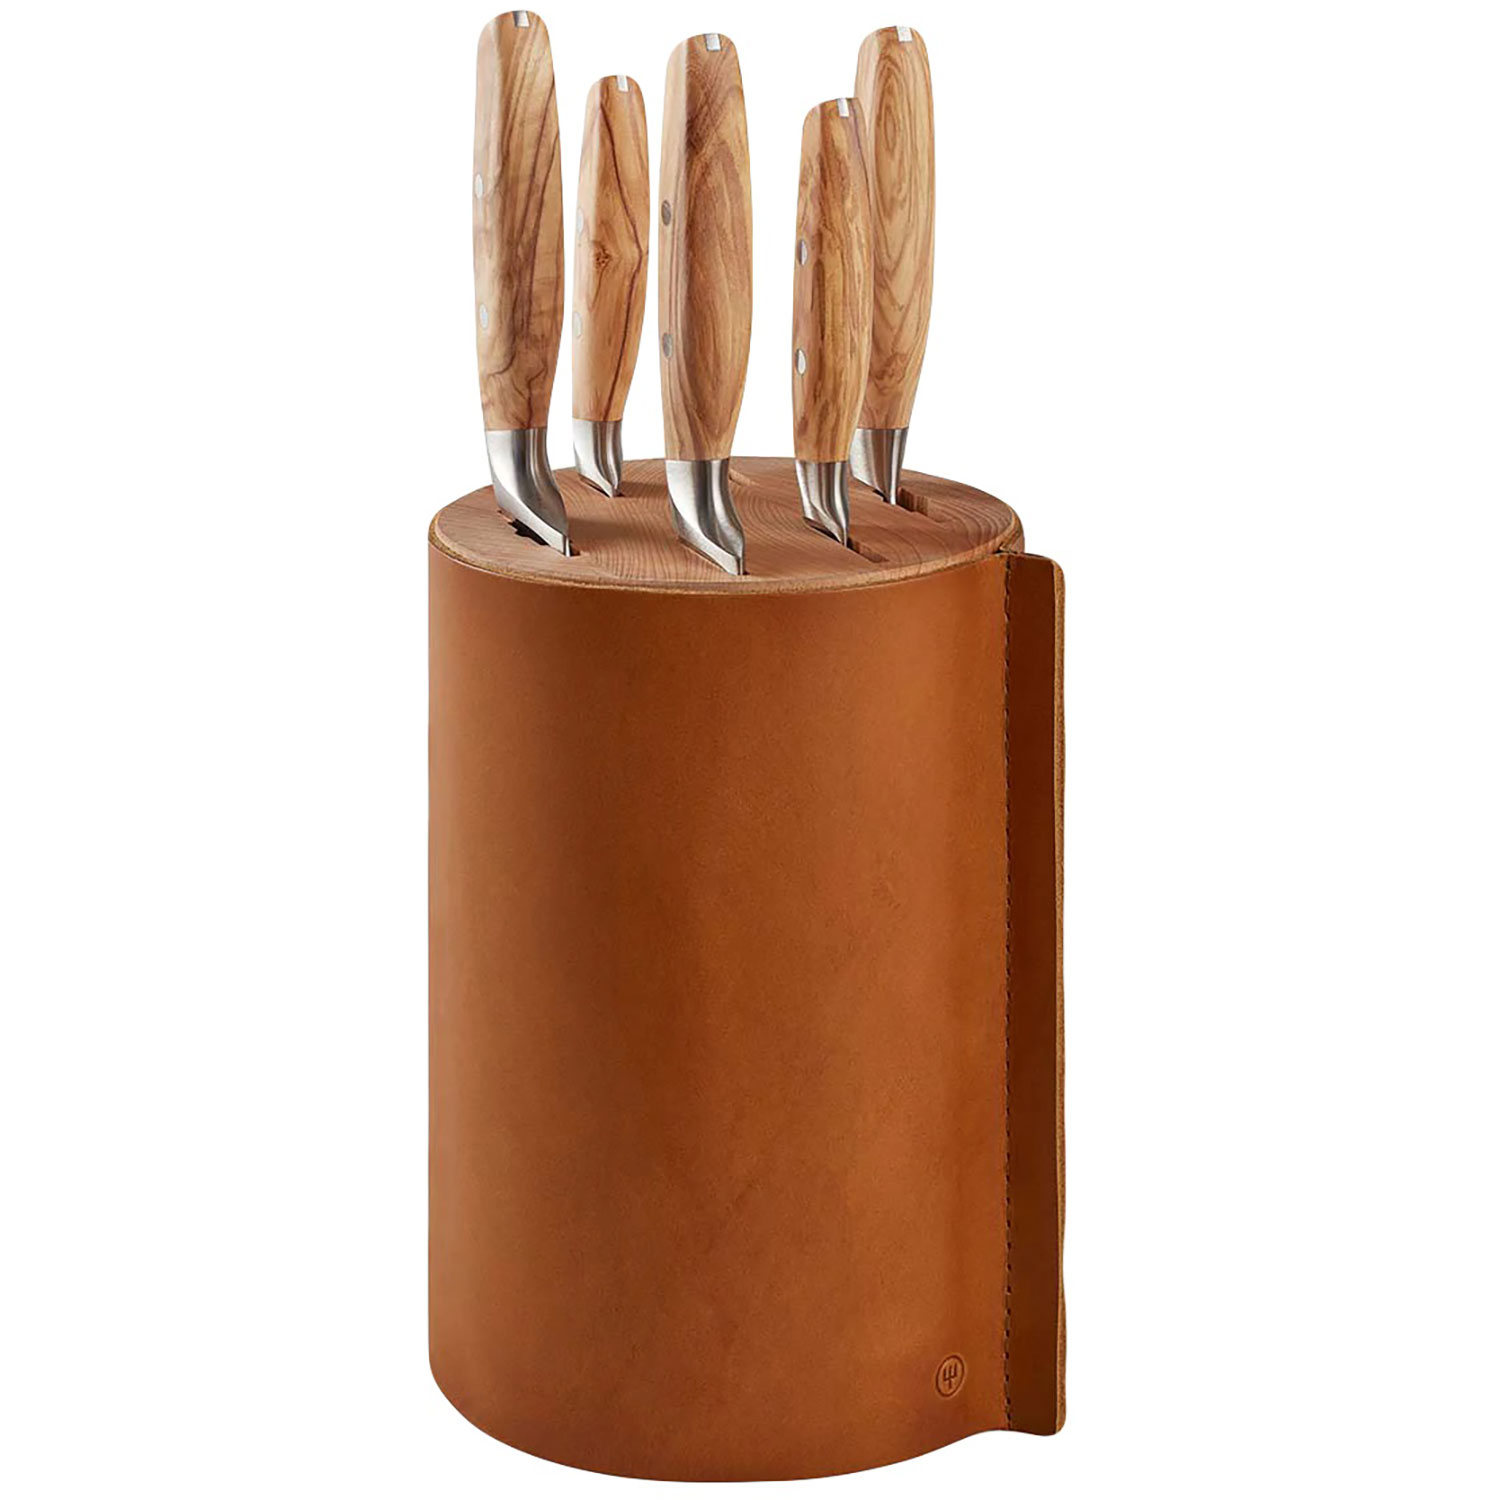 https://api-prod.royaldesign.se/api/products/image/11/wusthof-amici-knife-block-with-5-knives-olive-wood-leather-0